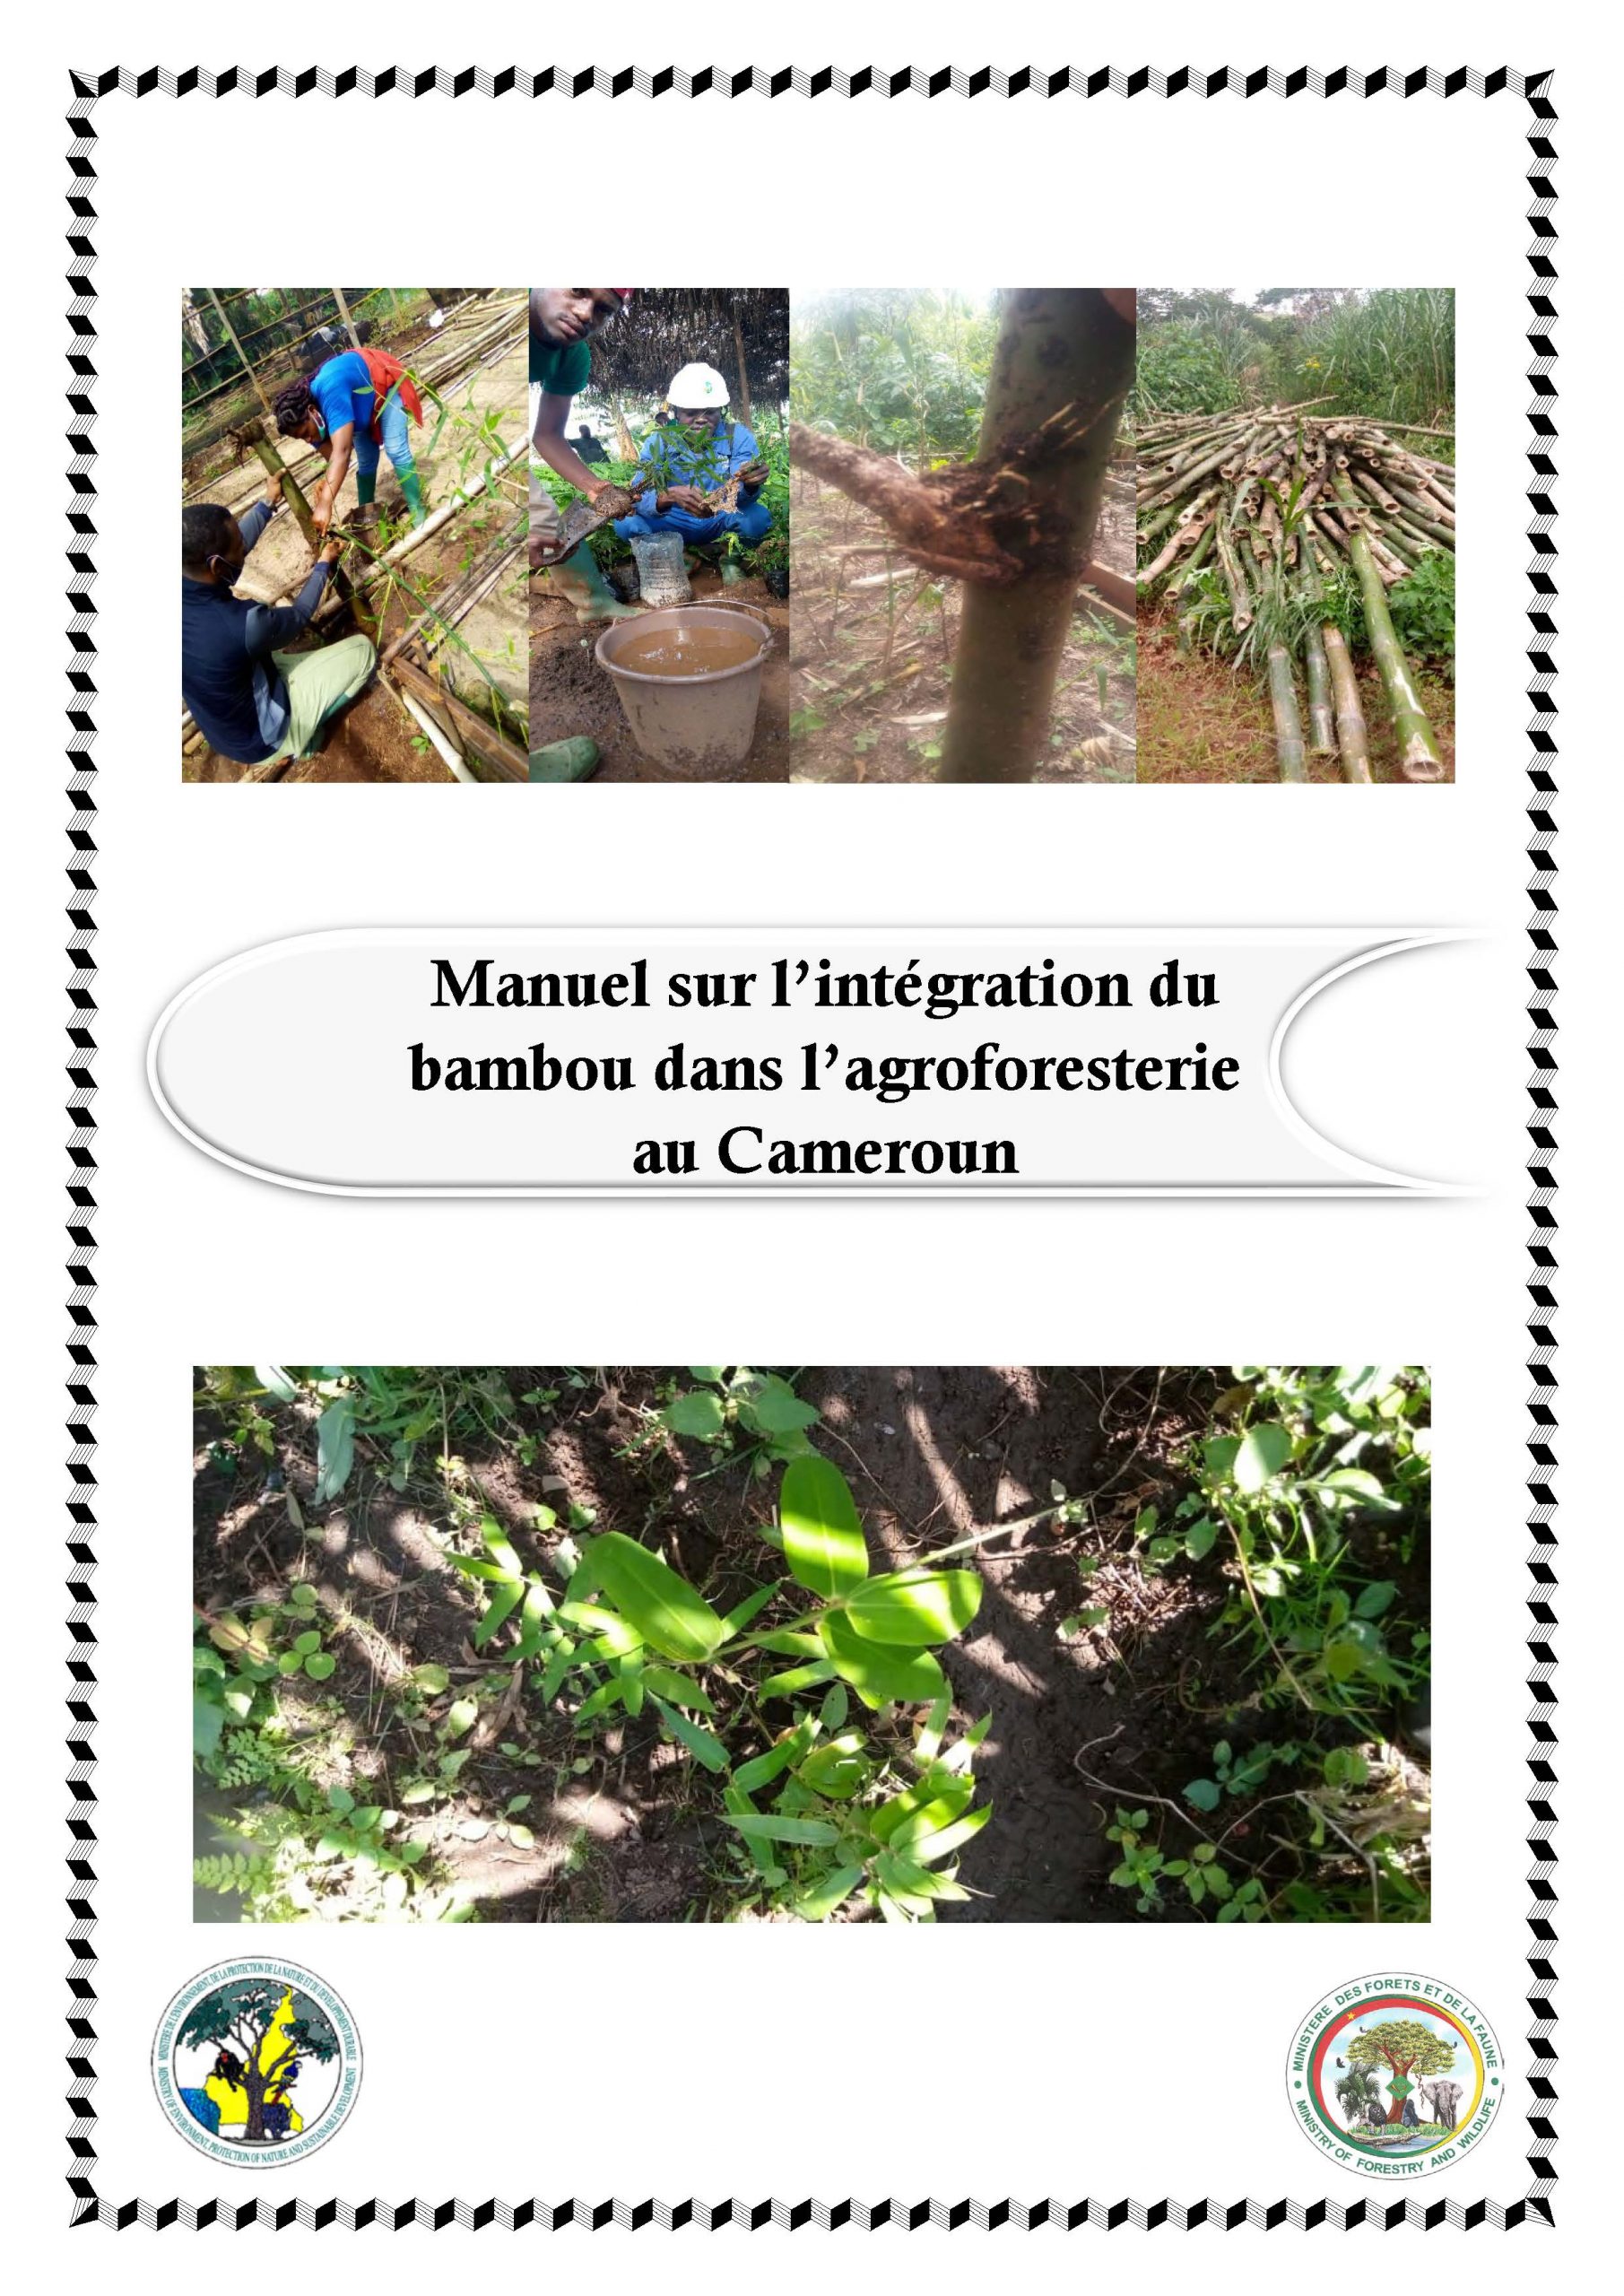 Manuel sur l’intégration du bambou dans l’agroforesterie au Cameroun